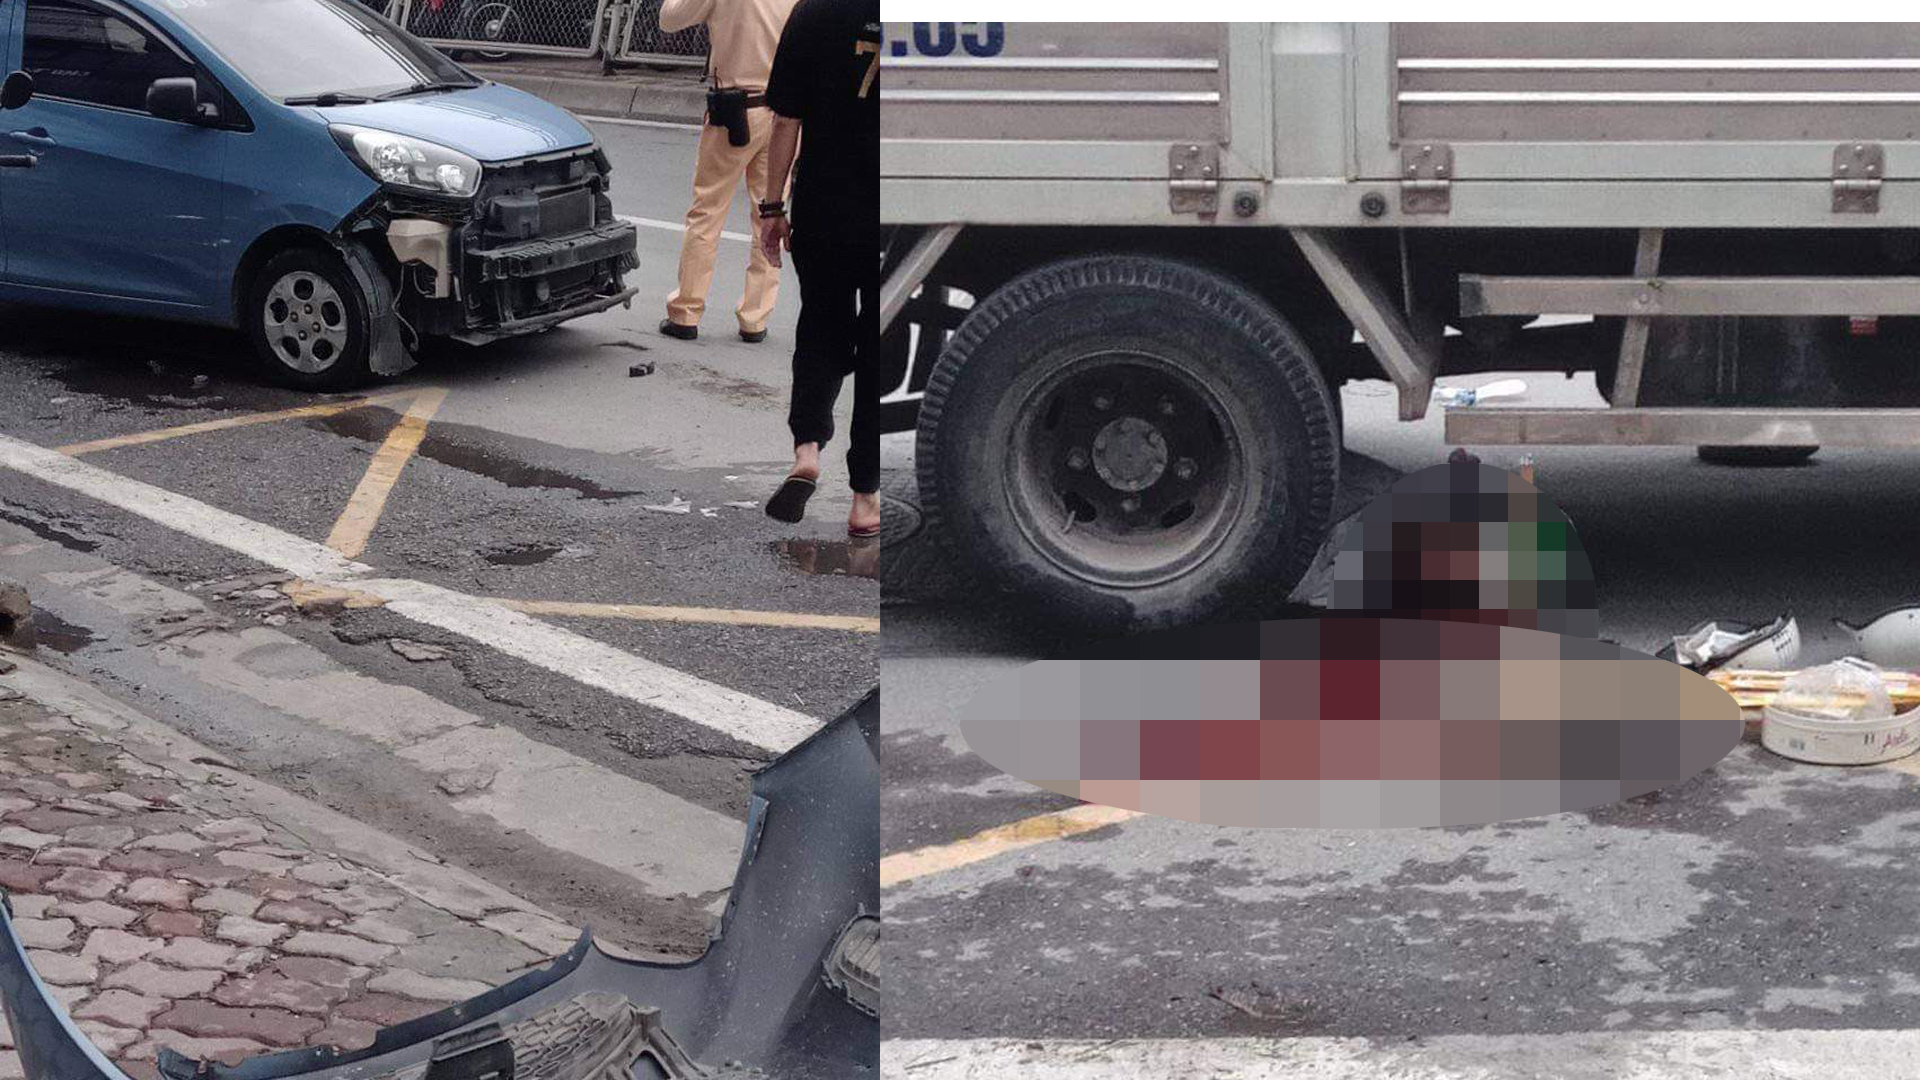 Hà Nội: Va chạm với ô tô do nữ tài xế cầm lái, 1 người tử vong - 1